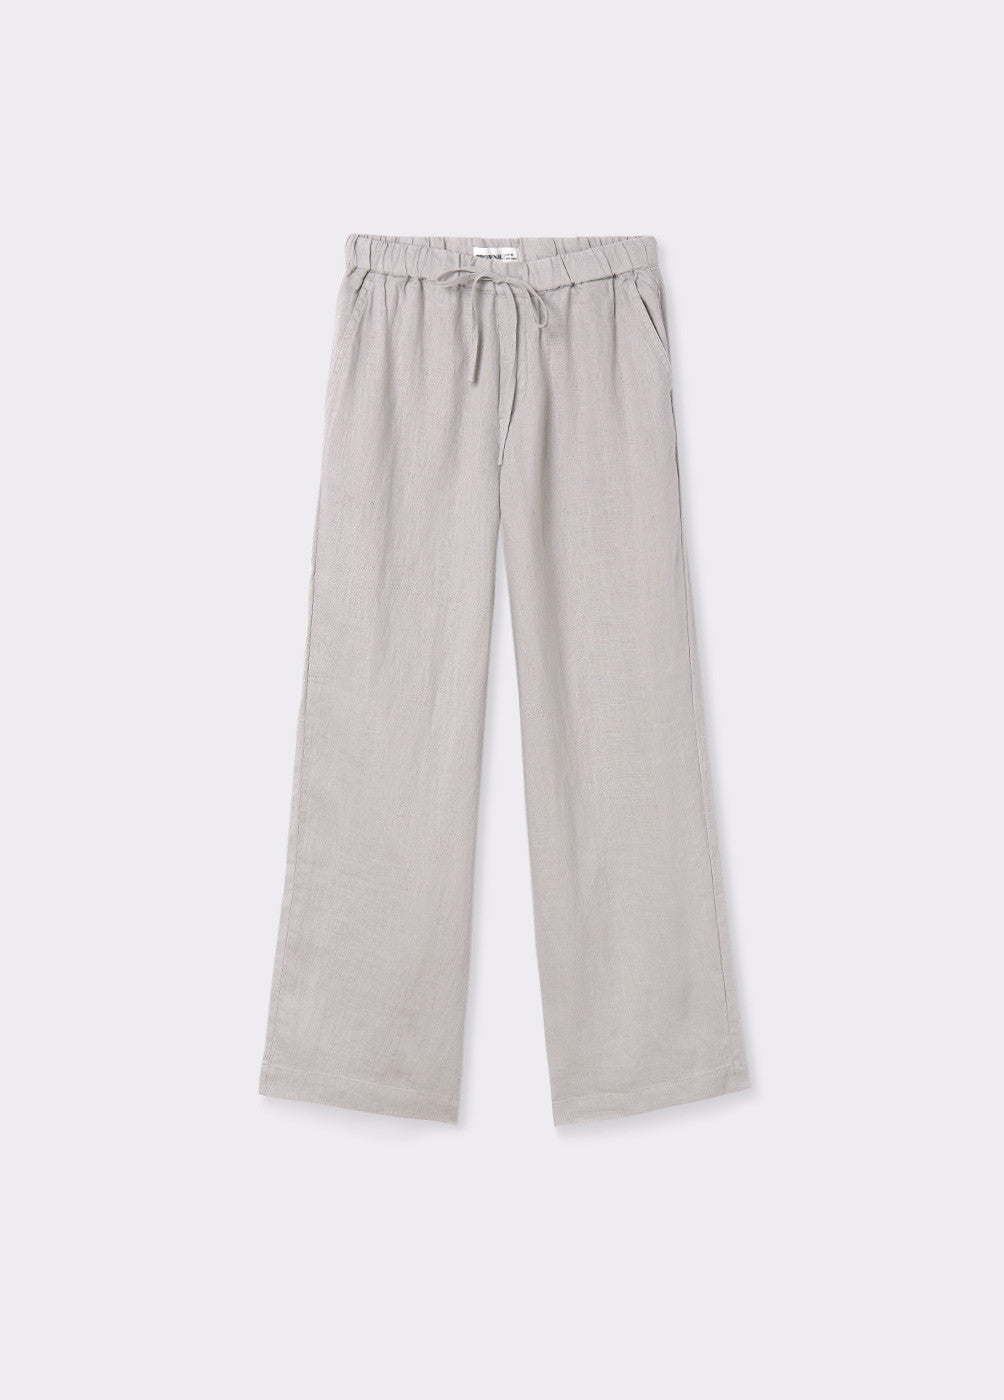 Pantalón goma cintura 100% lino